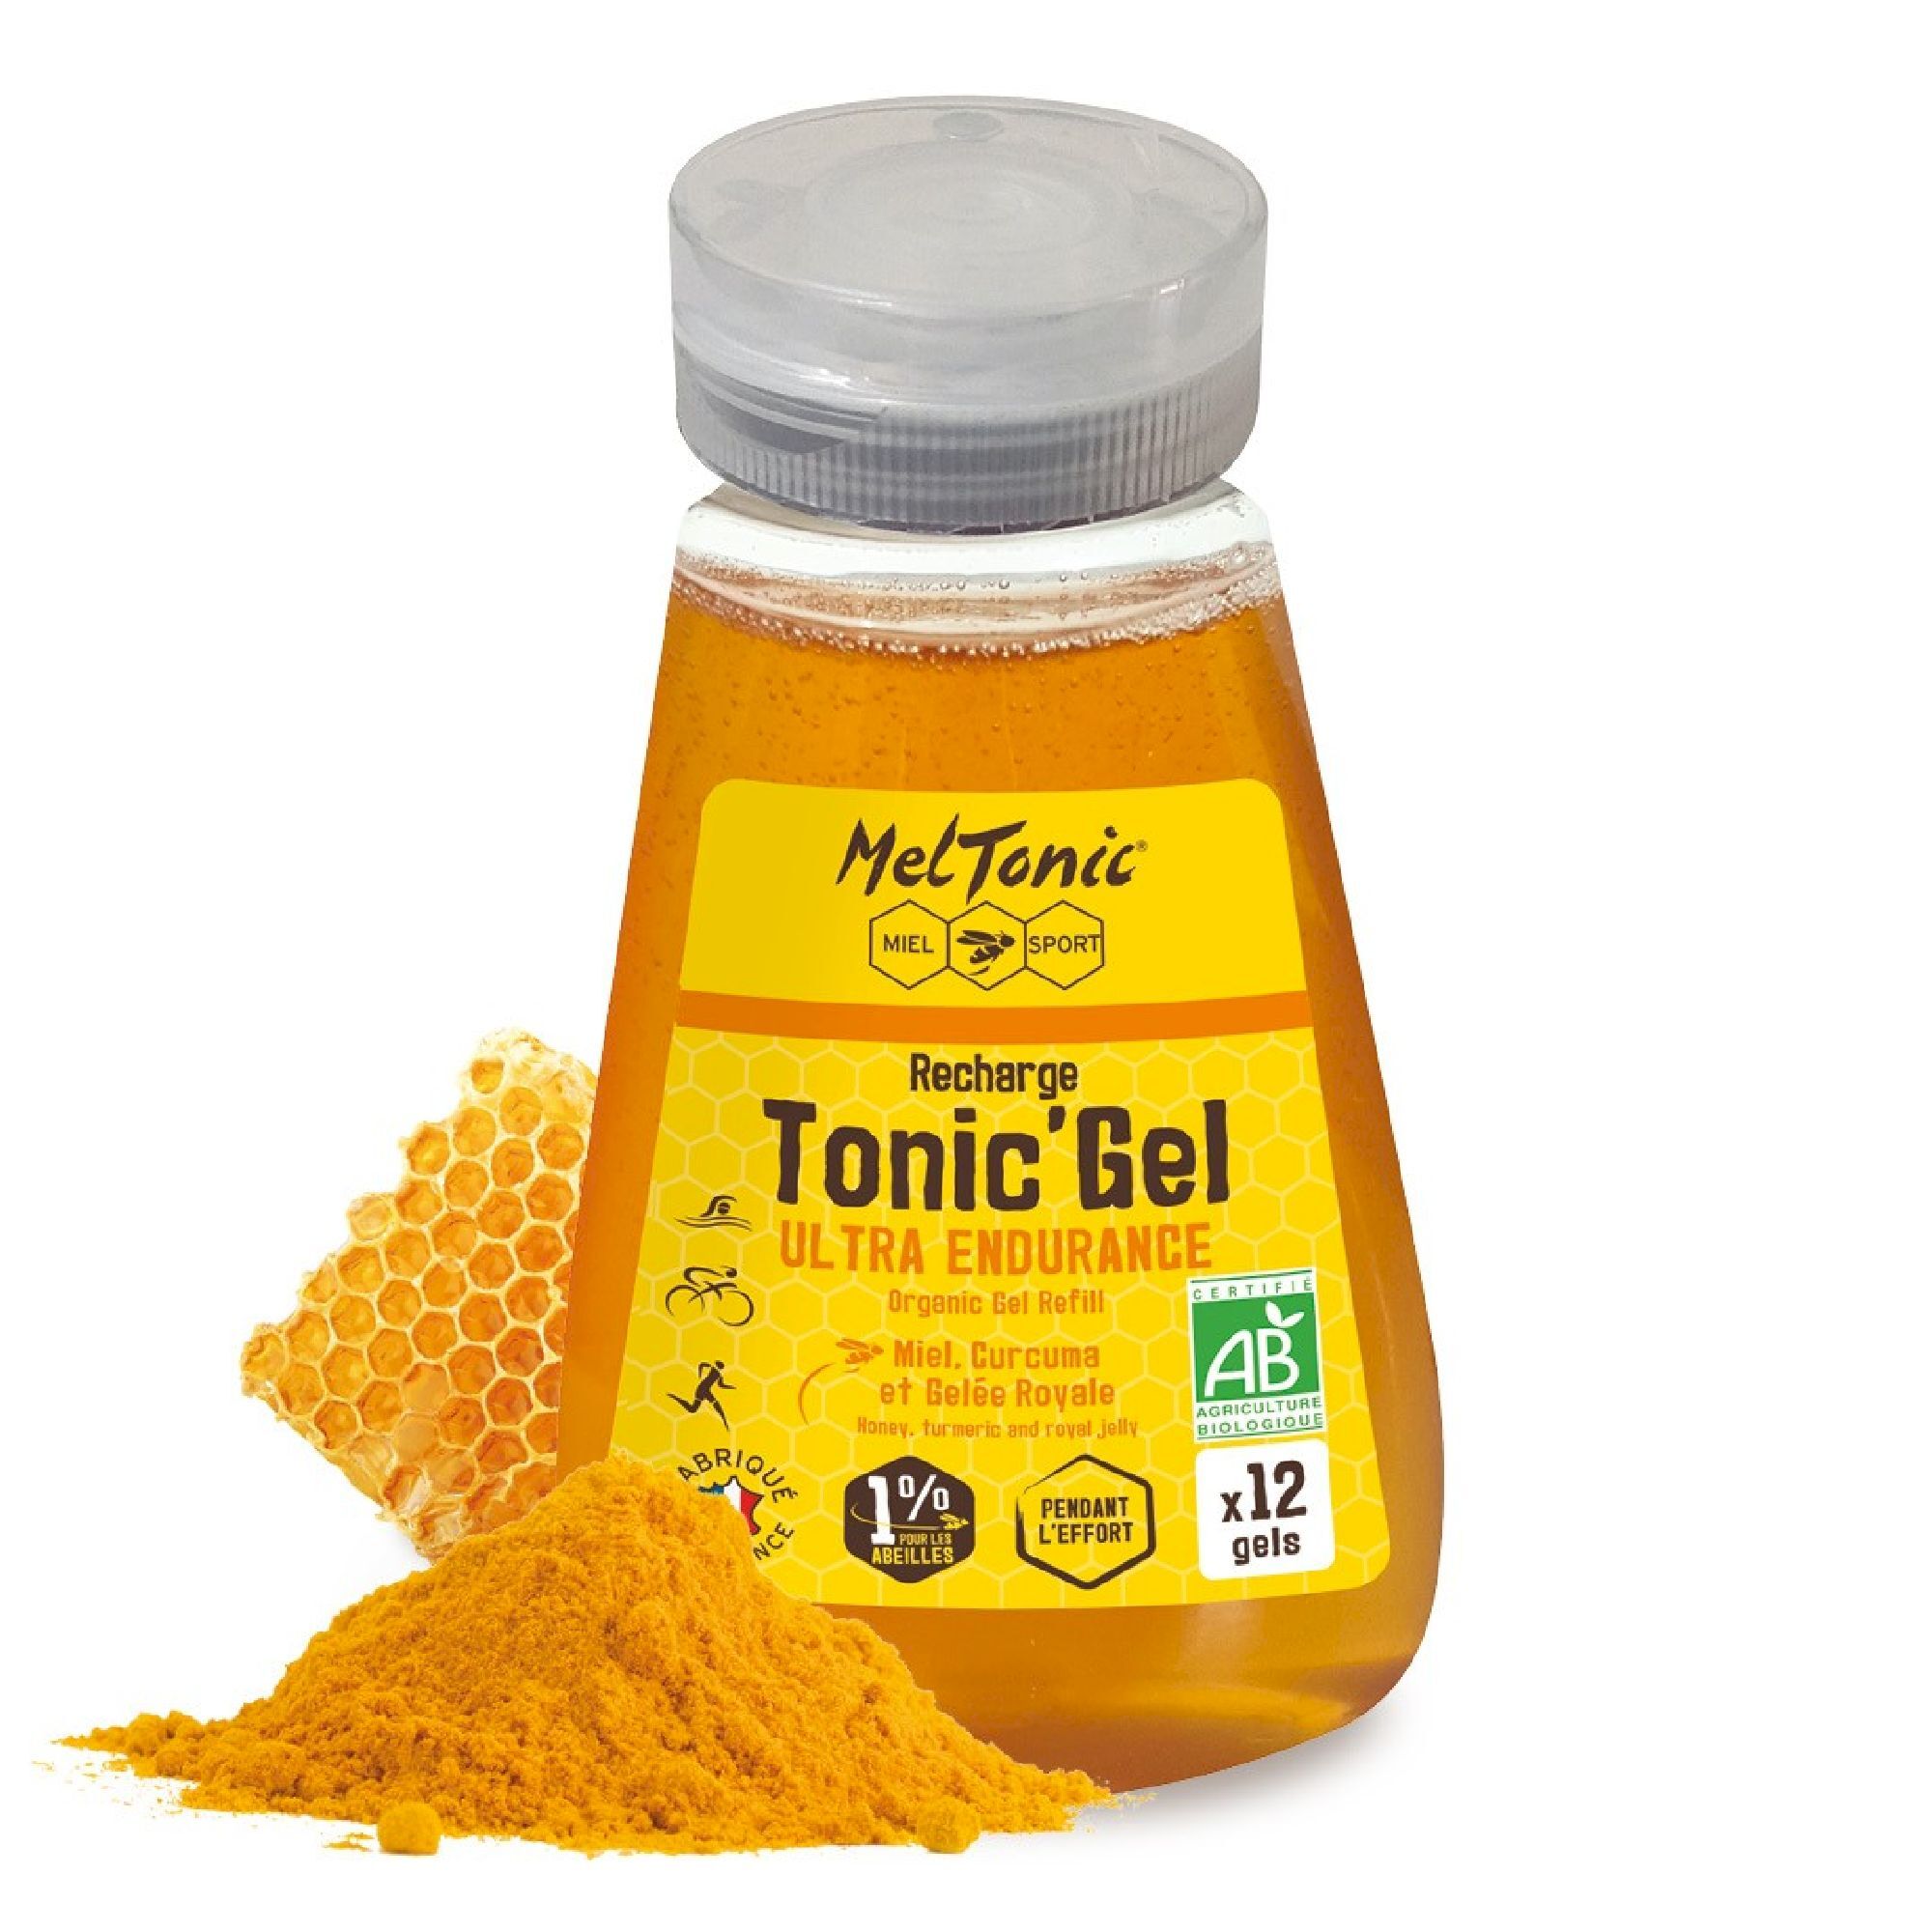 Meltonic Tonic Gel Bio Ultra Endurance - Recharge Eco - Energy gel